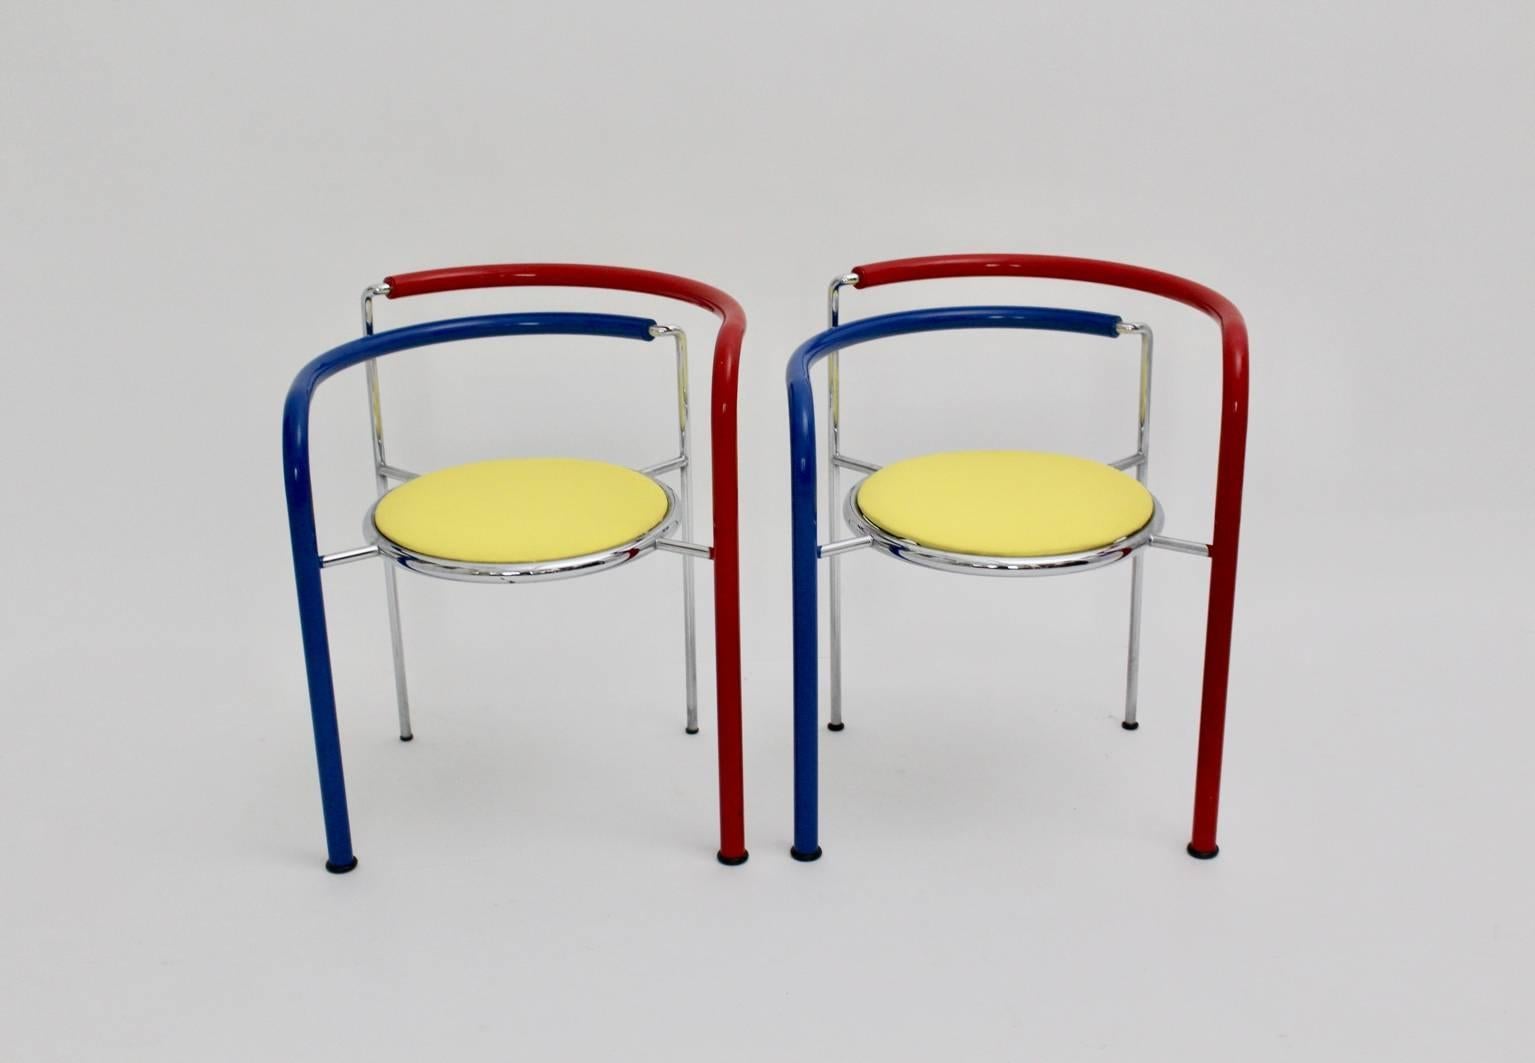 Dieses Paar rot, blau und gelb gefärbter Sessel, die auch stapelbar sind, namens Dark Horse, wurde von Rud Thygesen und Johnny Sorensen um 1989 entworfen und von Botium, Dänemark, ausgeführt.

Die Beine sind mit rot und blau gefärbtem PVC